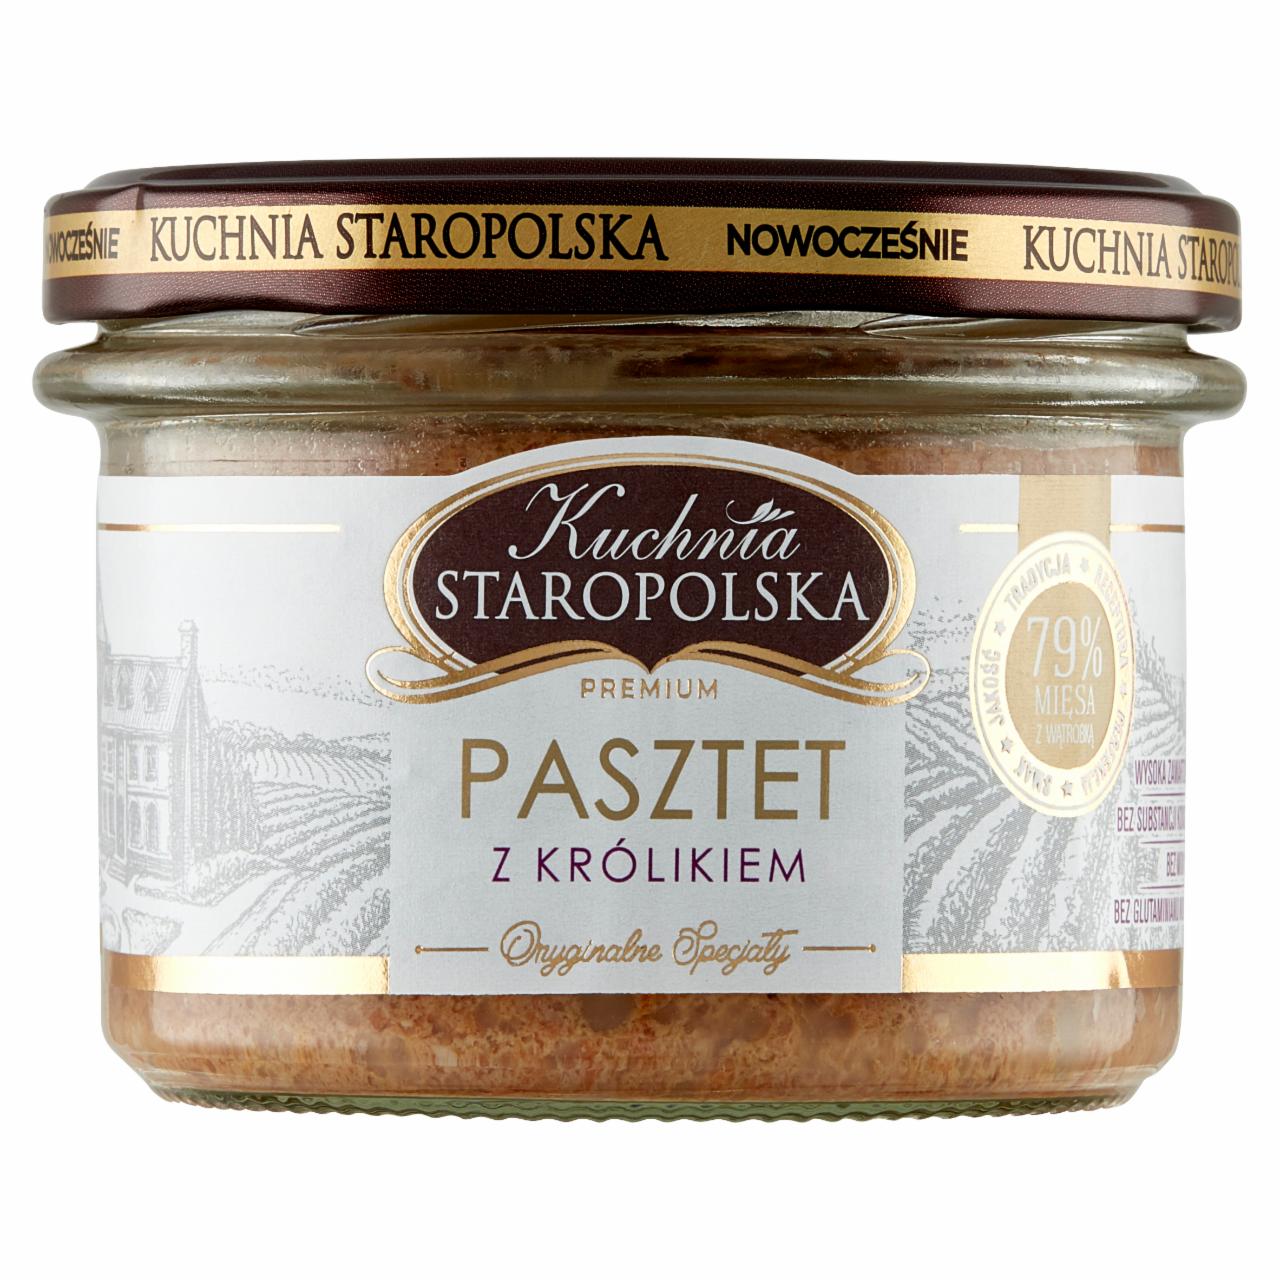 Zdjęcia - Kuchnia Staropolska Premium Pasztet z królikiem 160 g